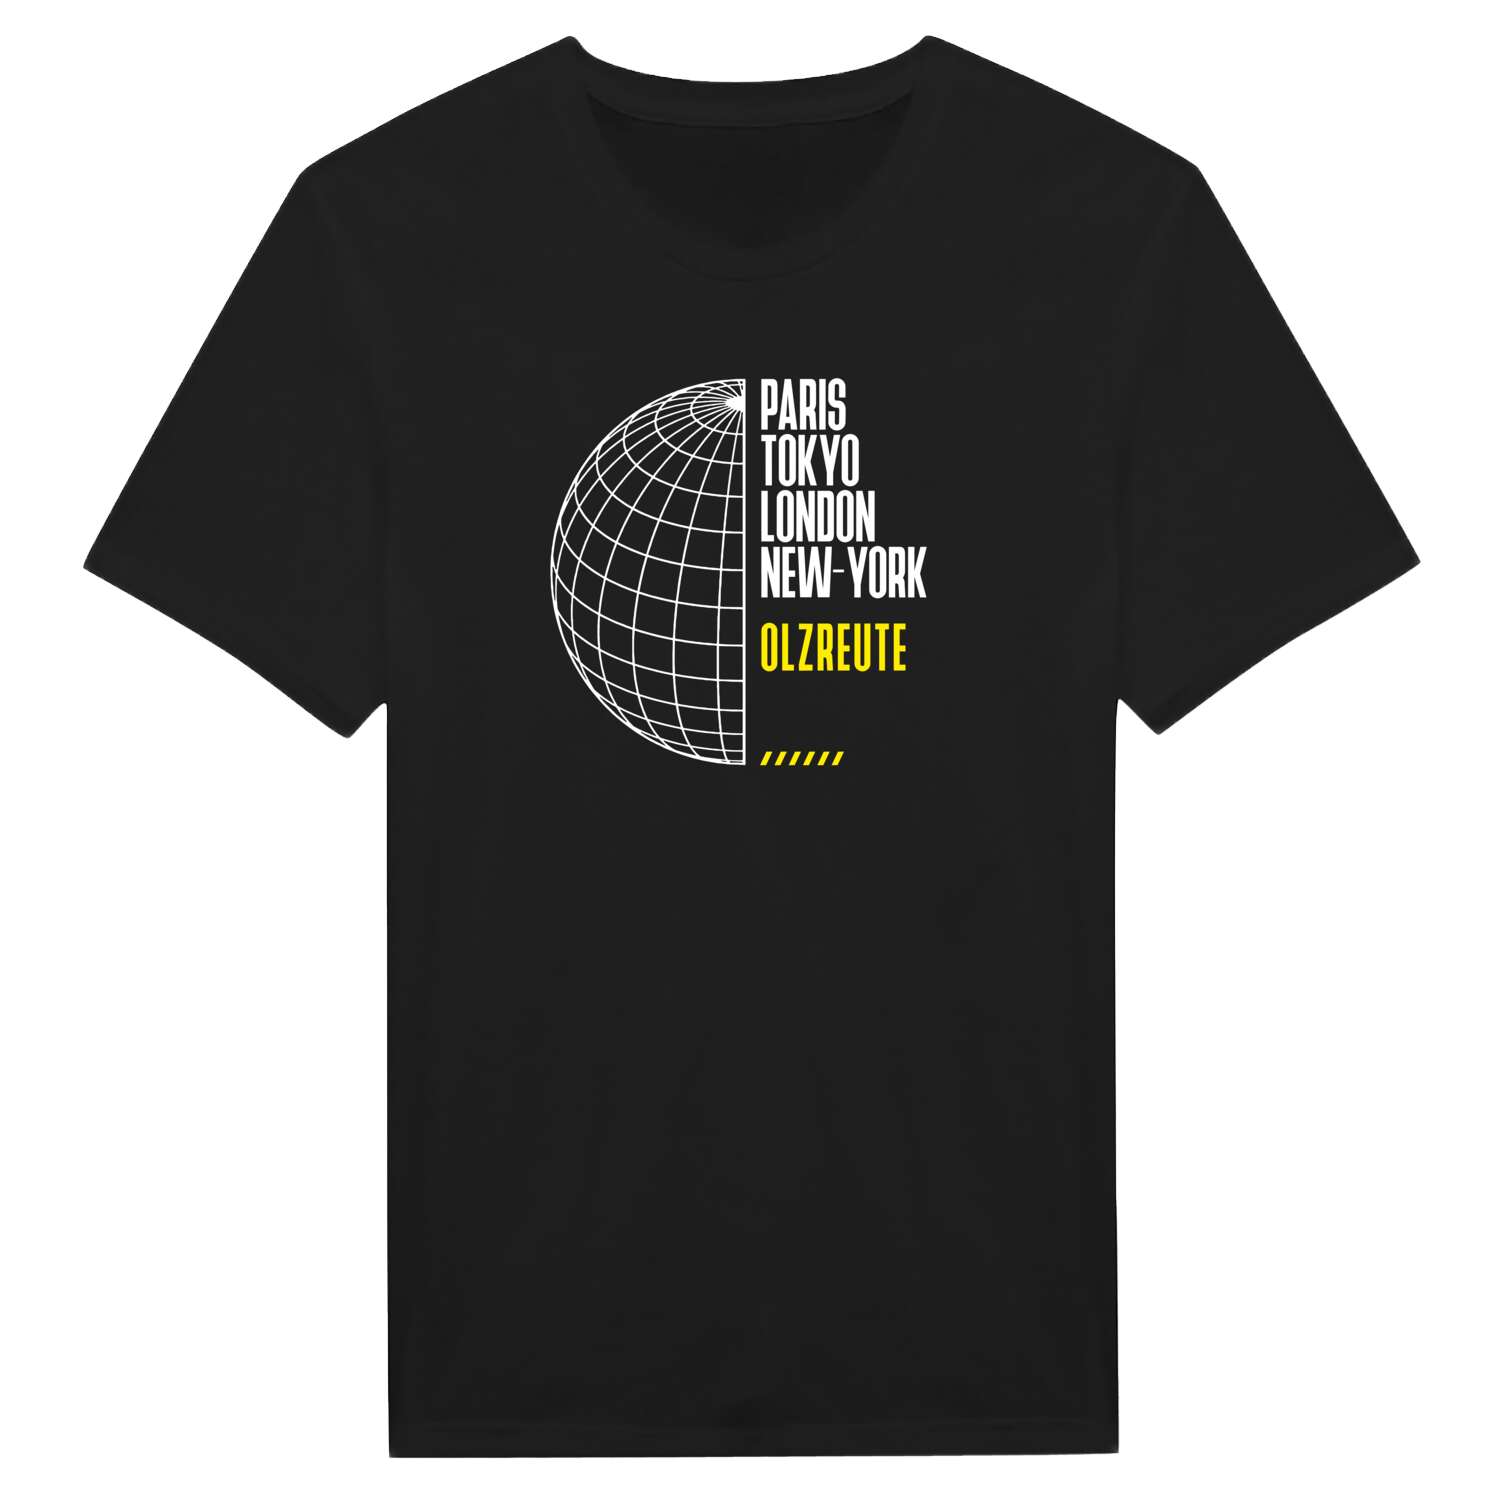 Olzreute T-Shirt »Paris Tokyo London«